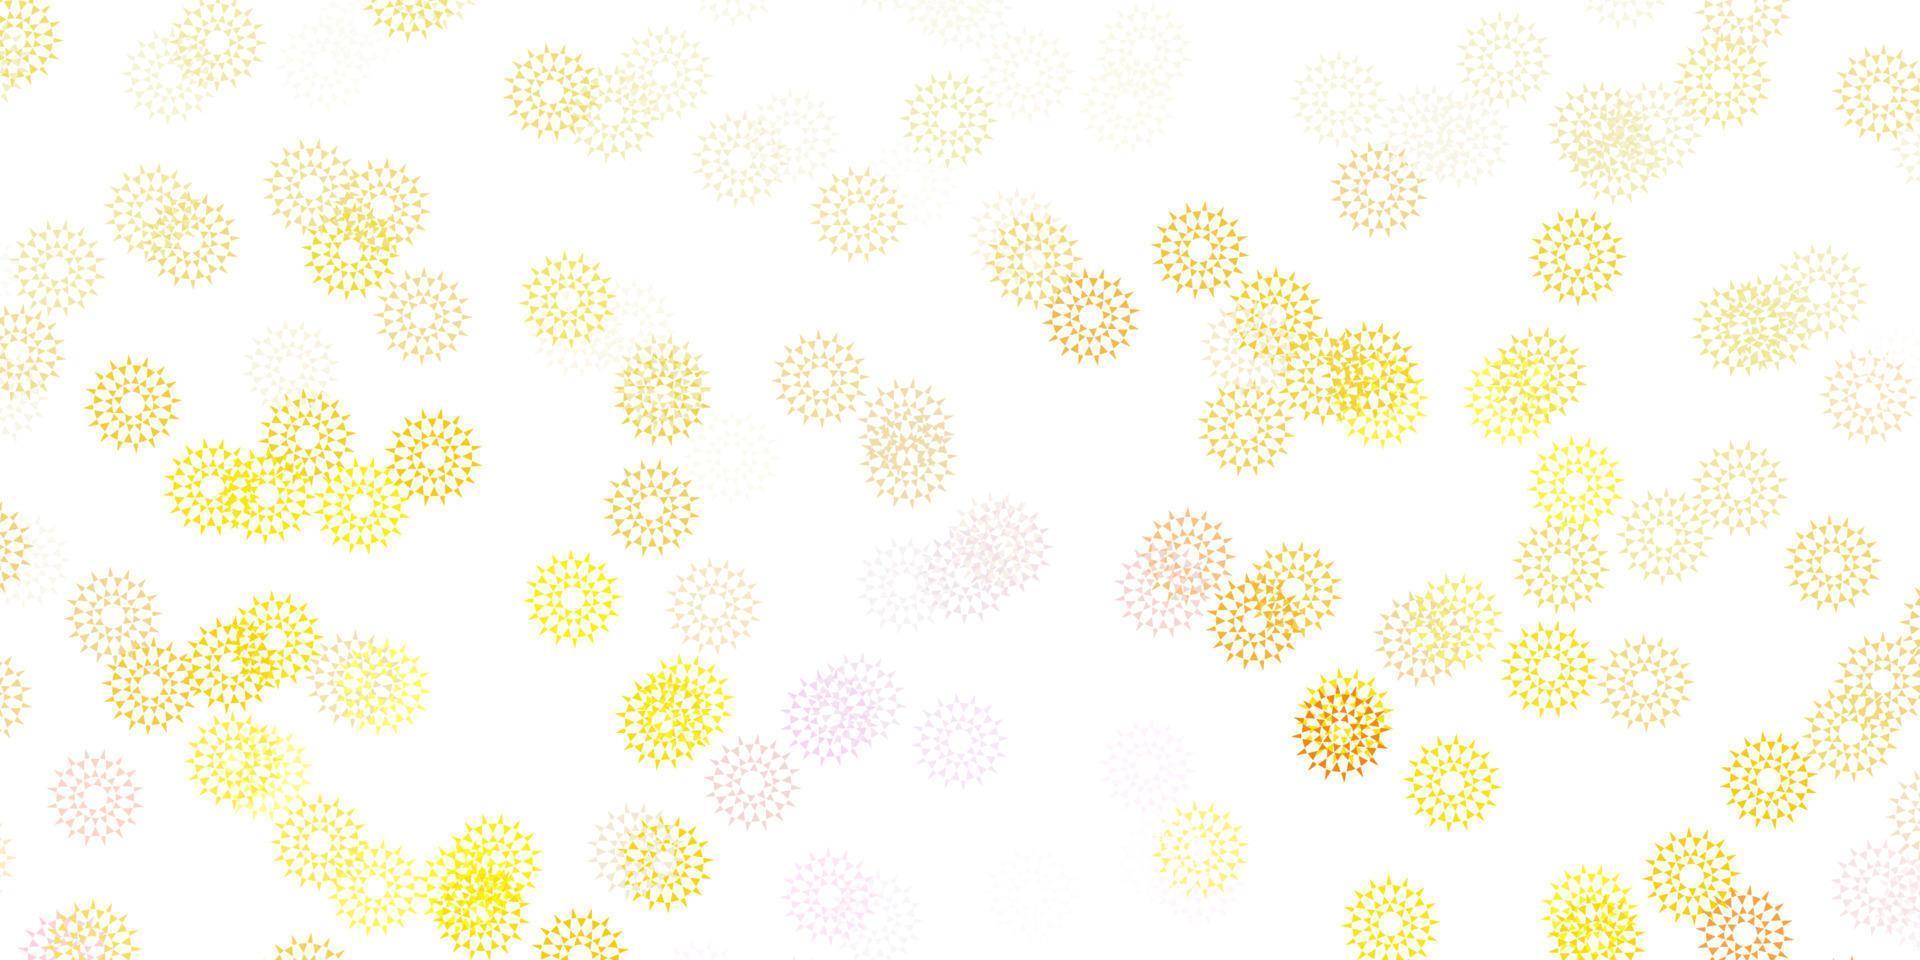 sfondo doodle vettoriale rosa chiaro, giallo con fiori.